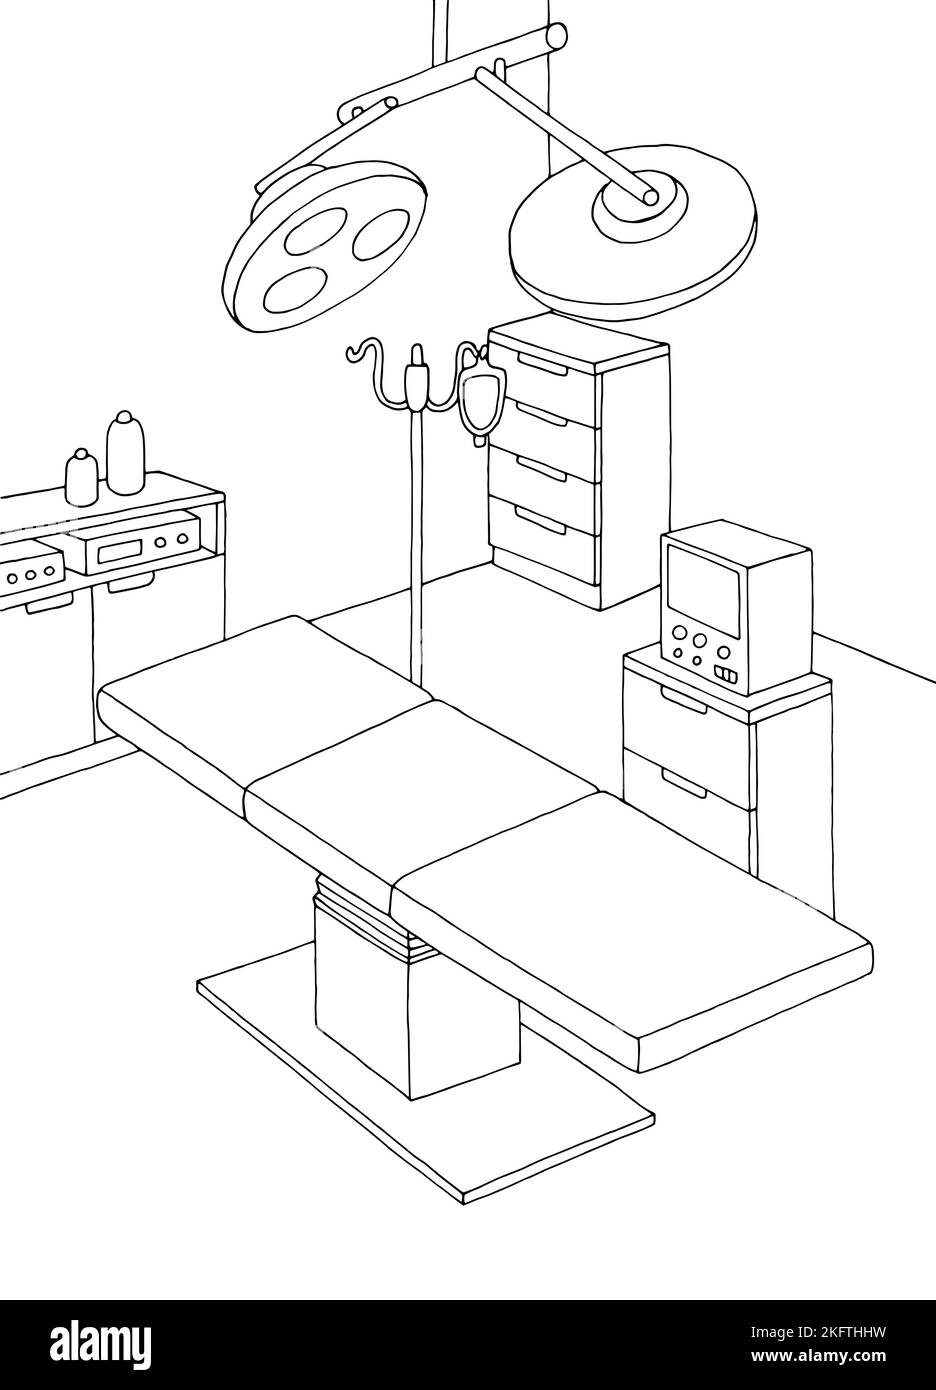 Schéma d'illustration de l'intérieur vertical noir blanc de la salle d'opération Illustration de Vecteur